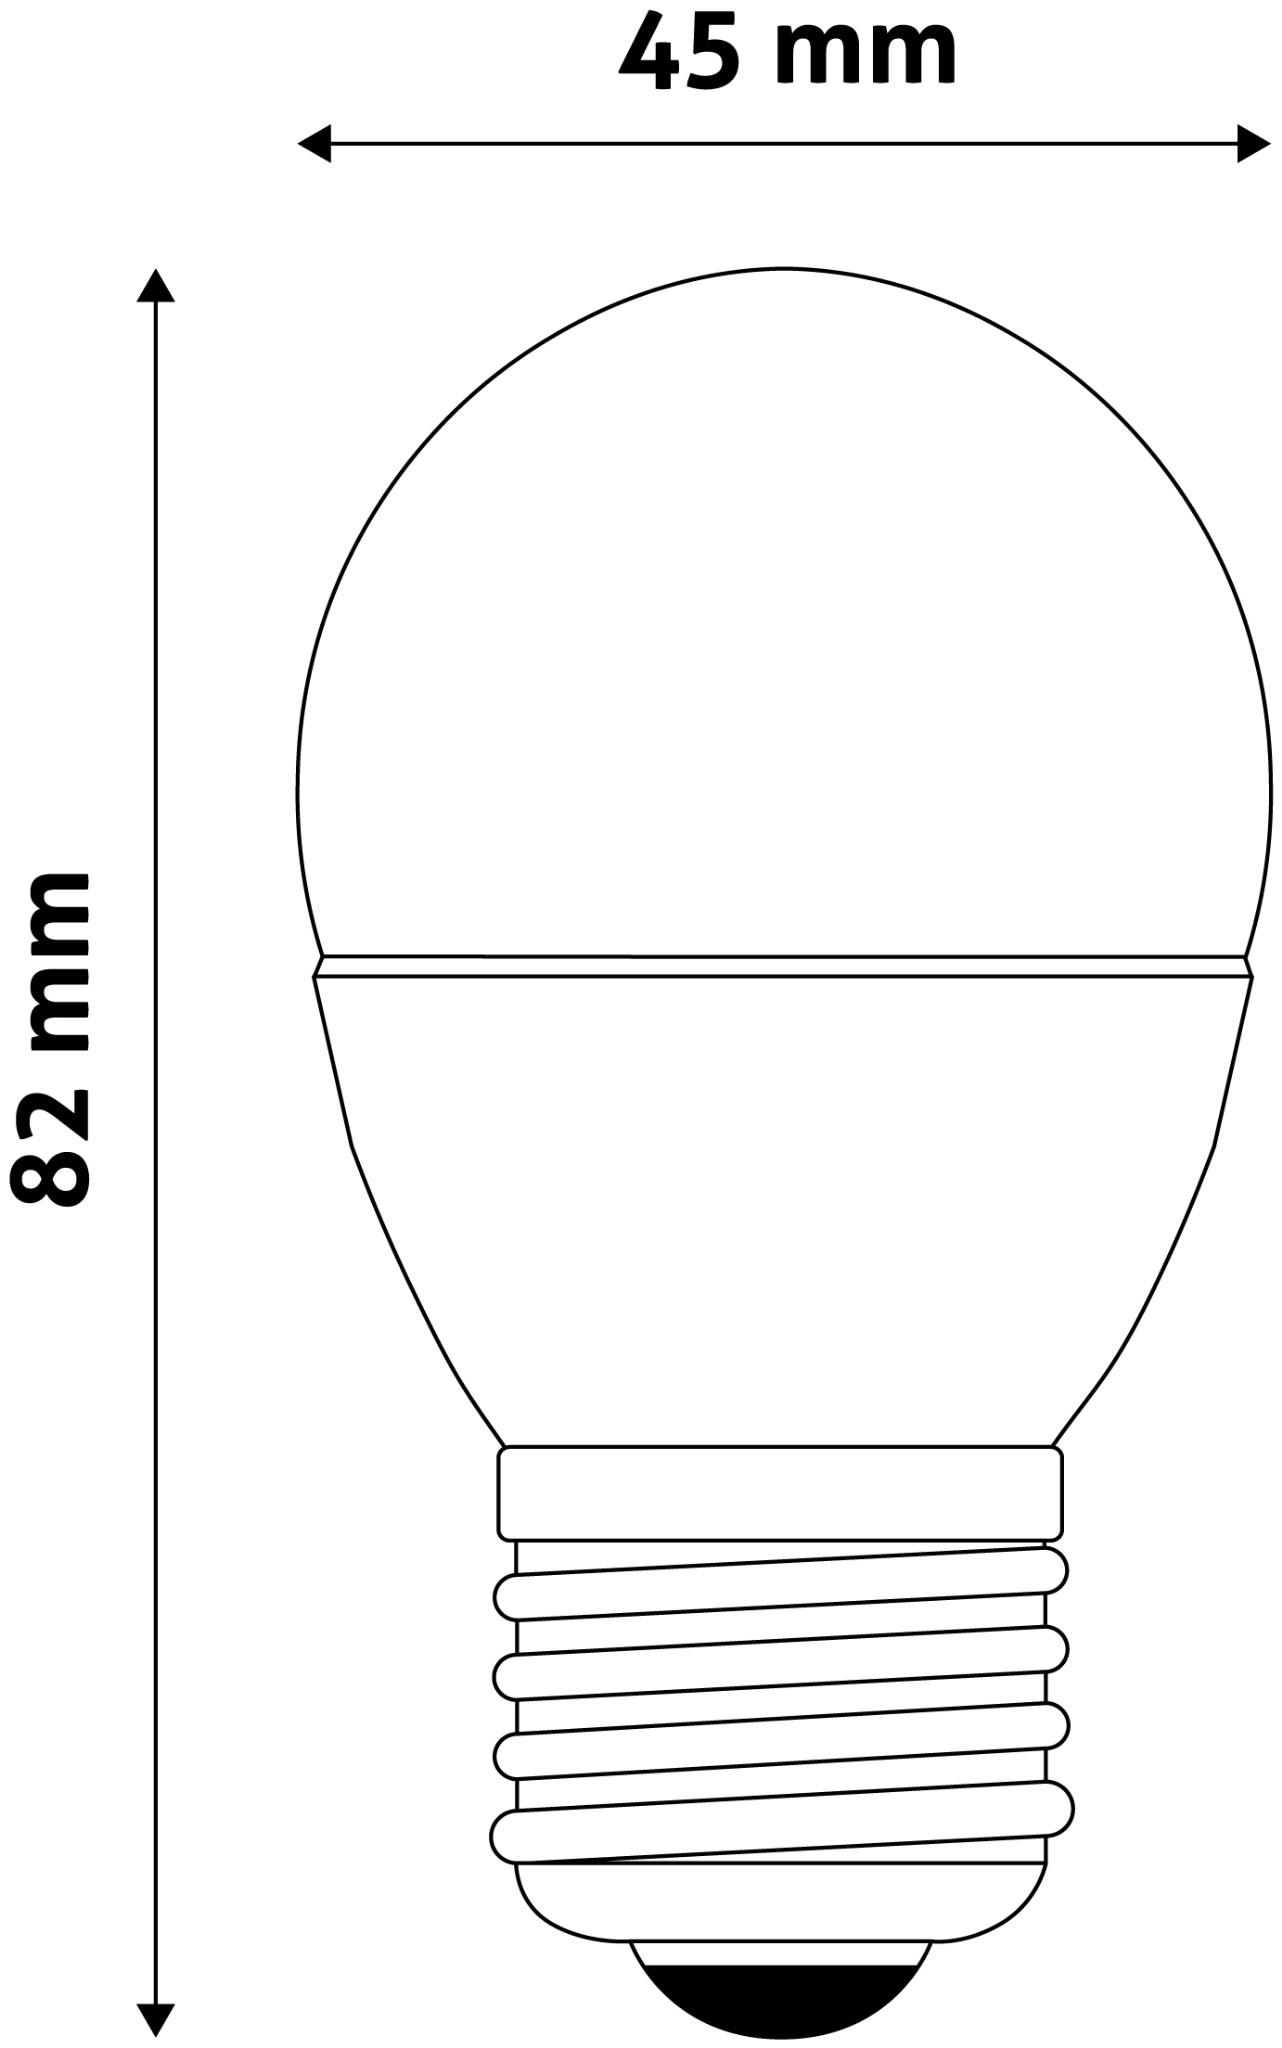 Selected image for AVIDE Mini sijalica LED SMD E27 G45 2K 6W bela